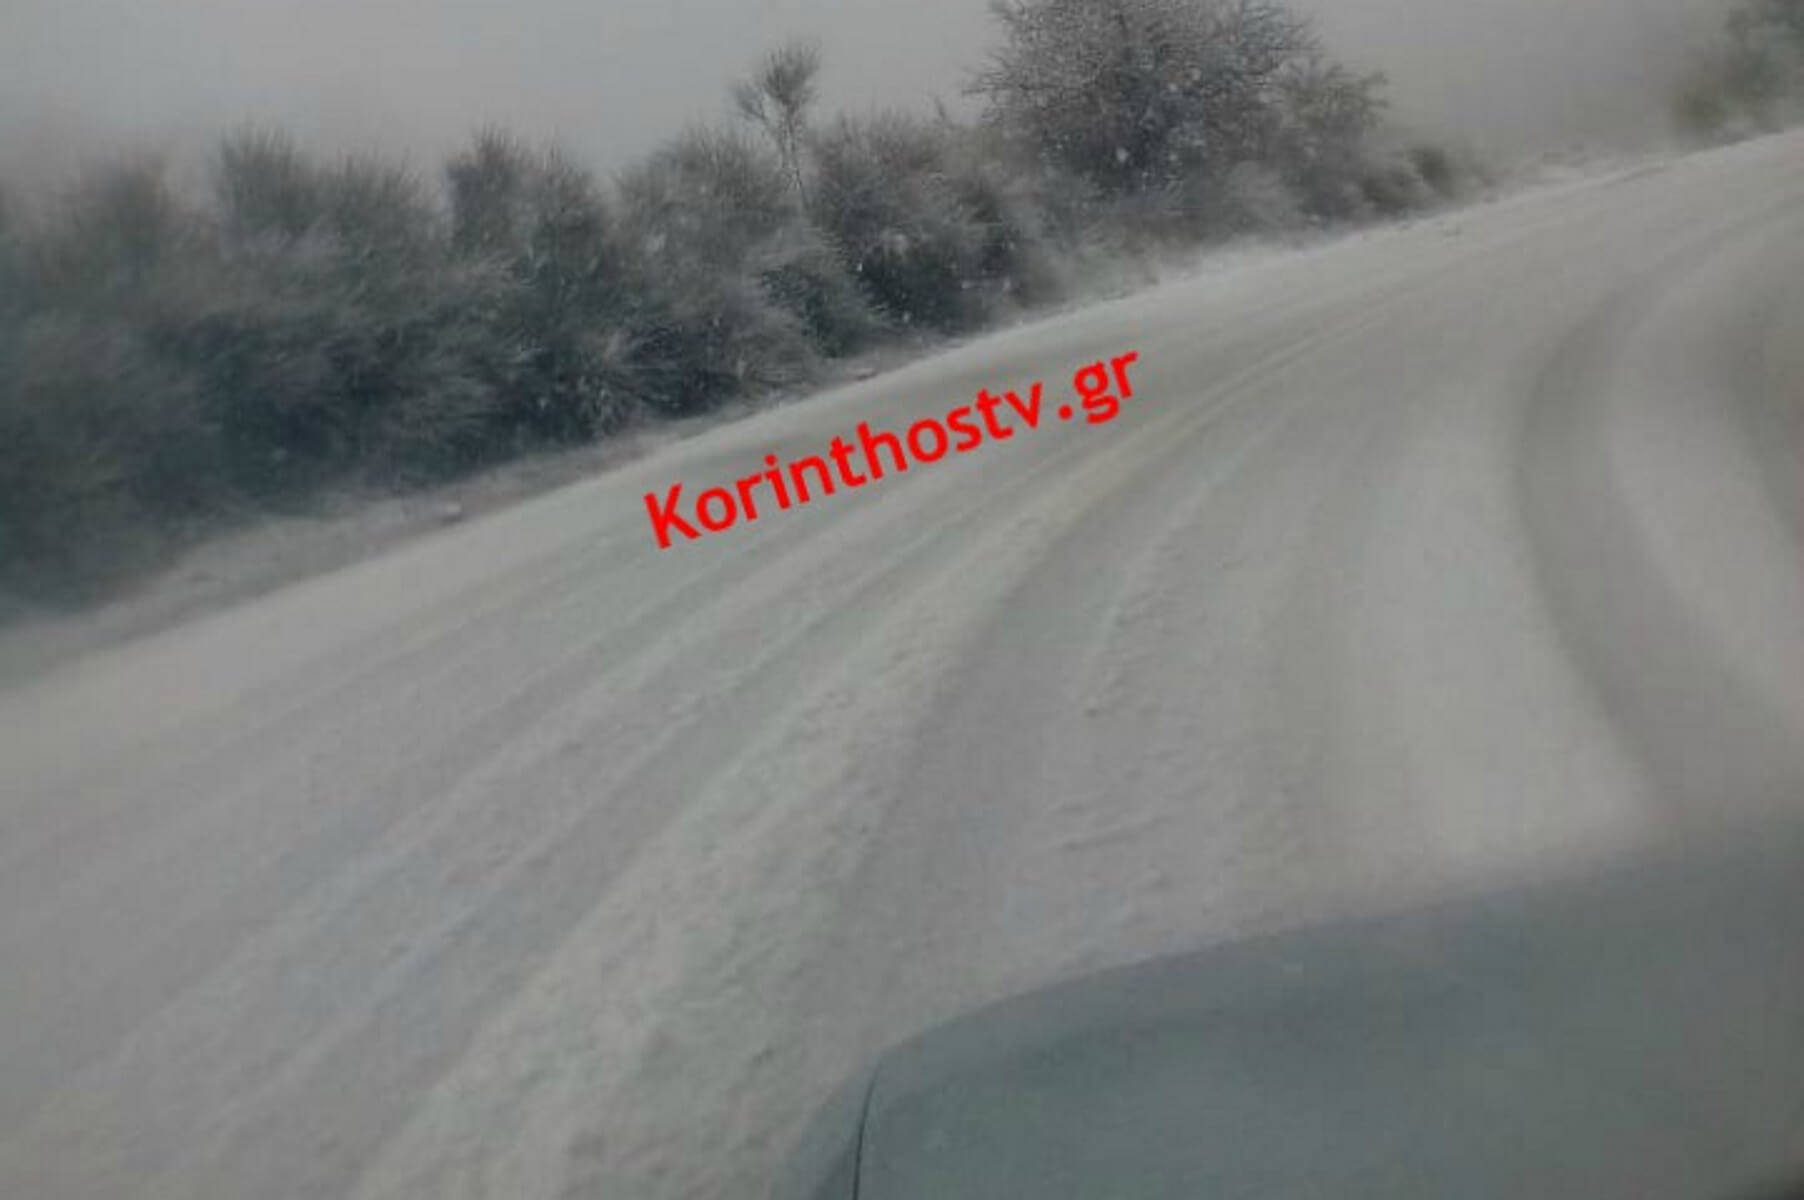 Κορινθία: Έντονη χιονόπτωση στην Καστανιά – video